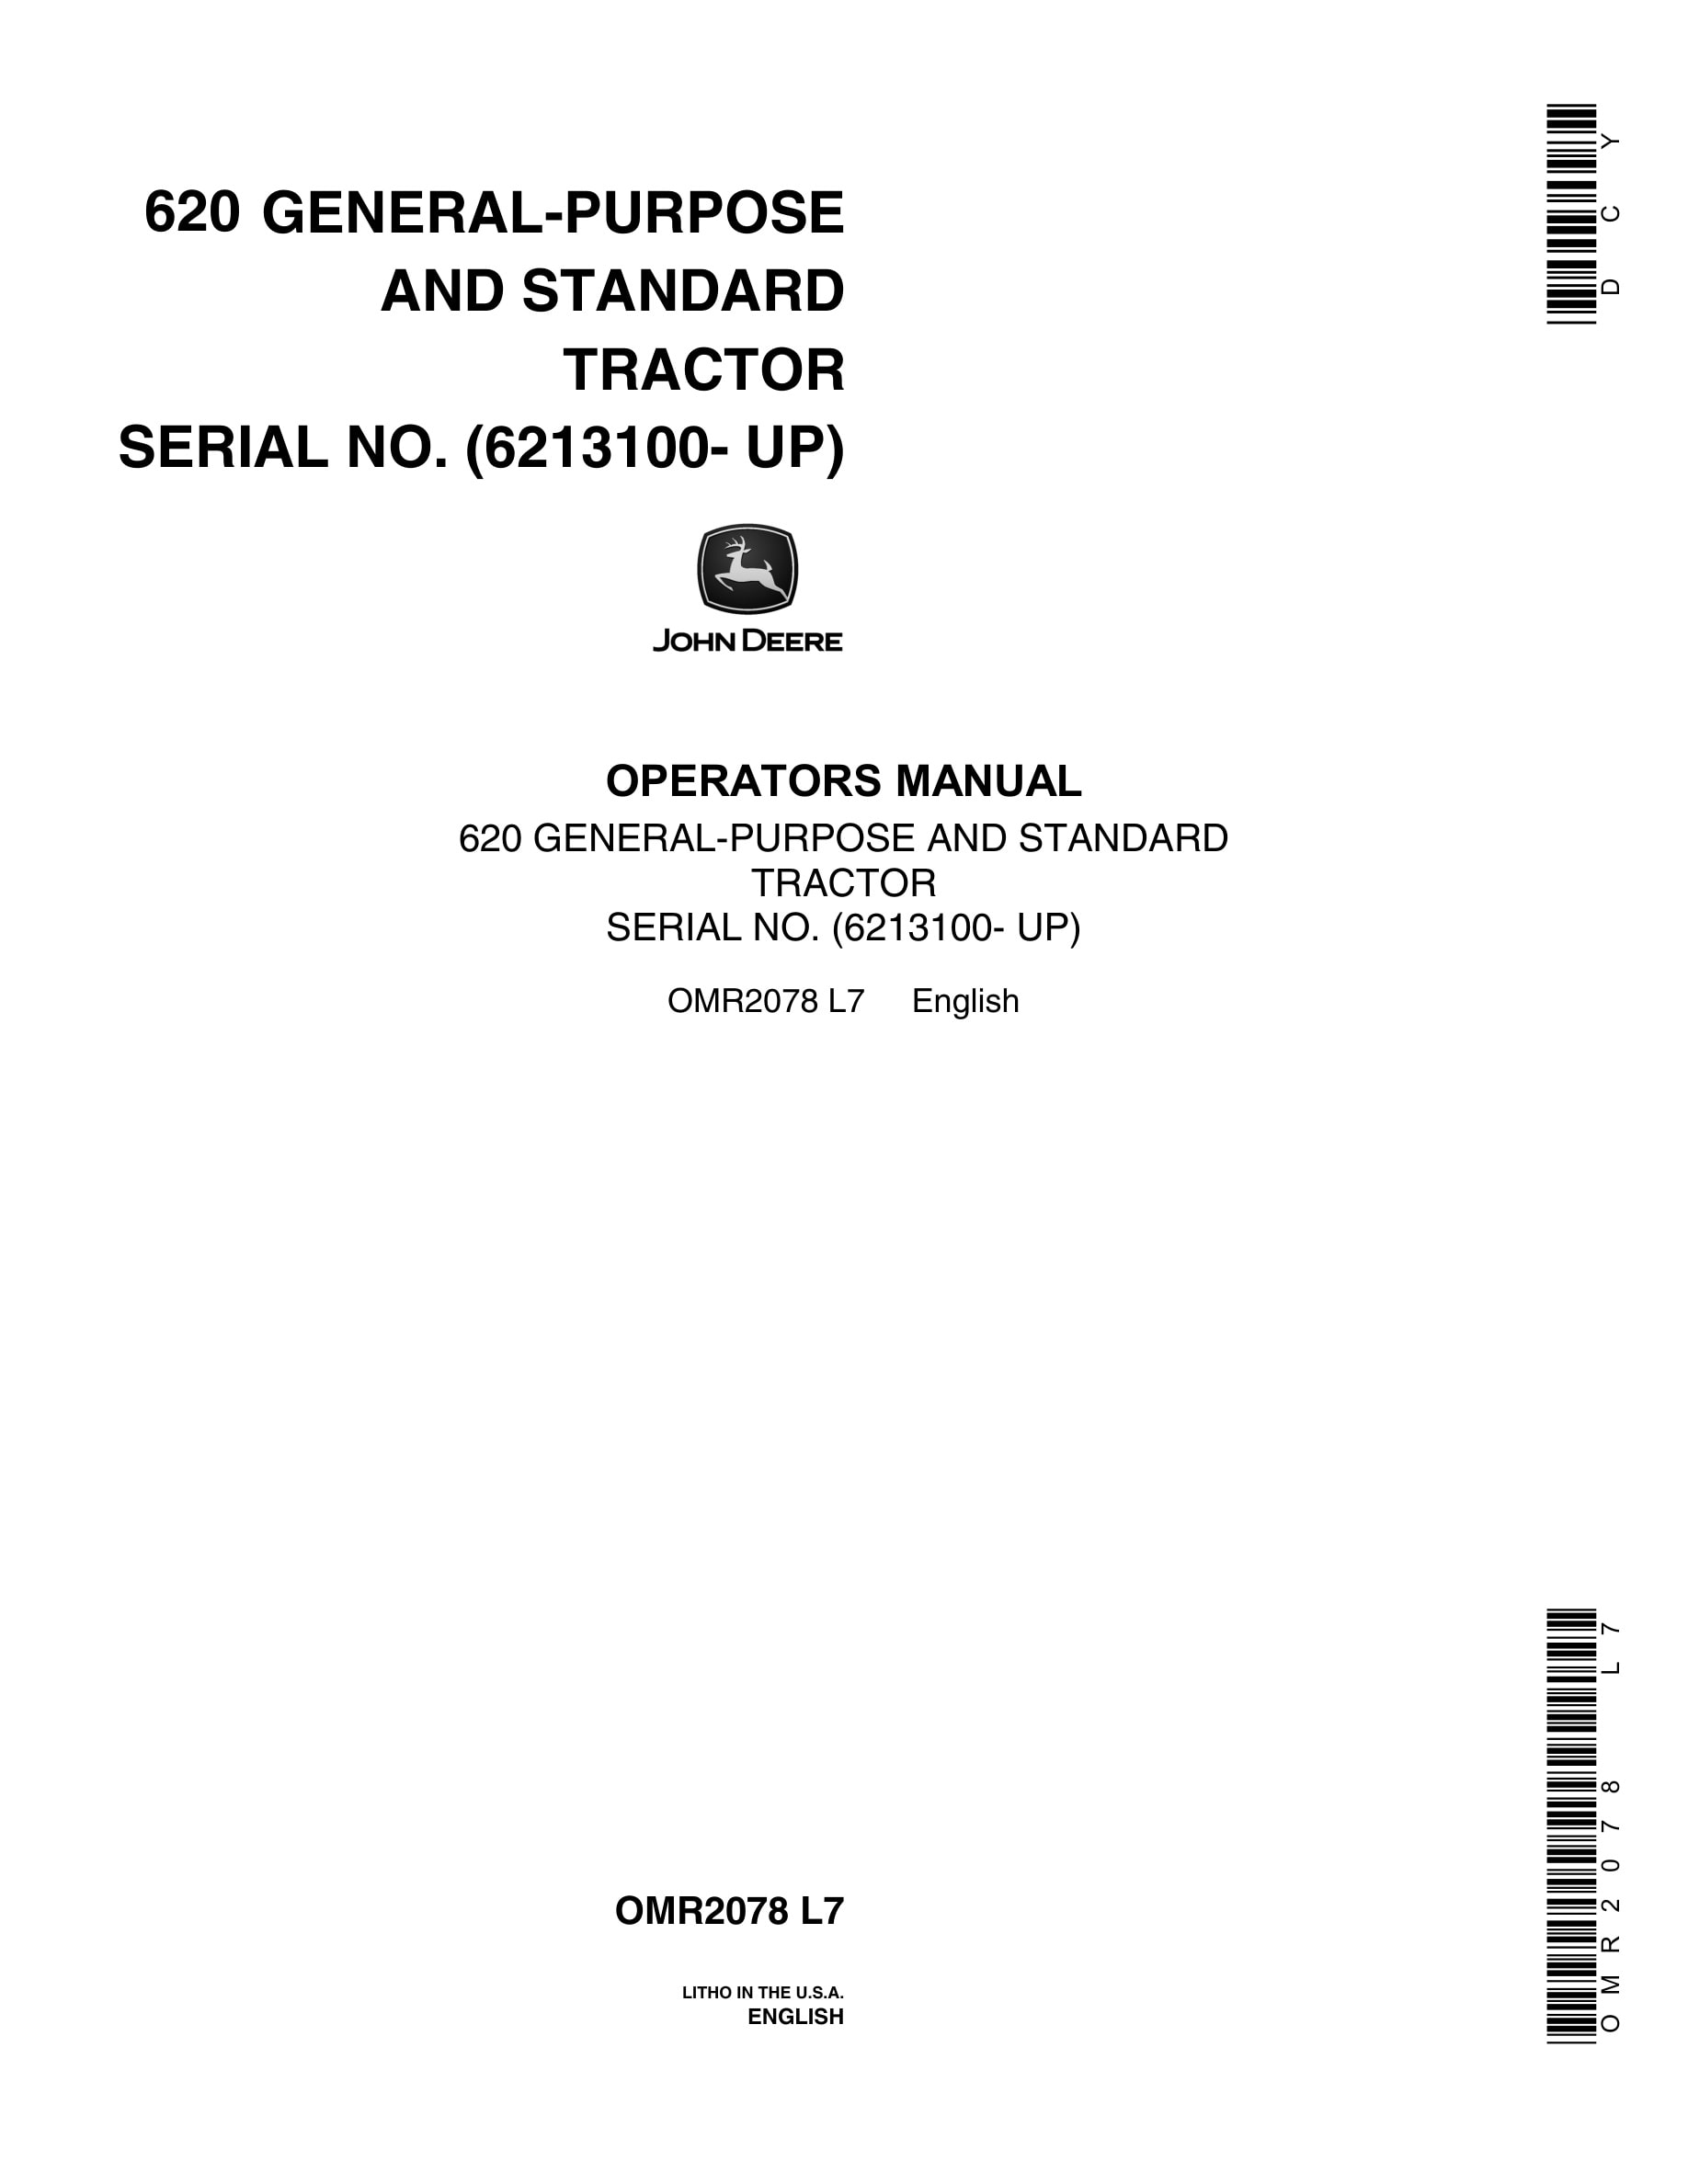 John Deere 620 Tractor Operator Manual OMR2078-1